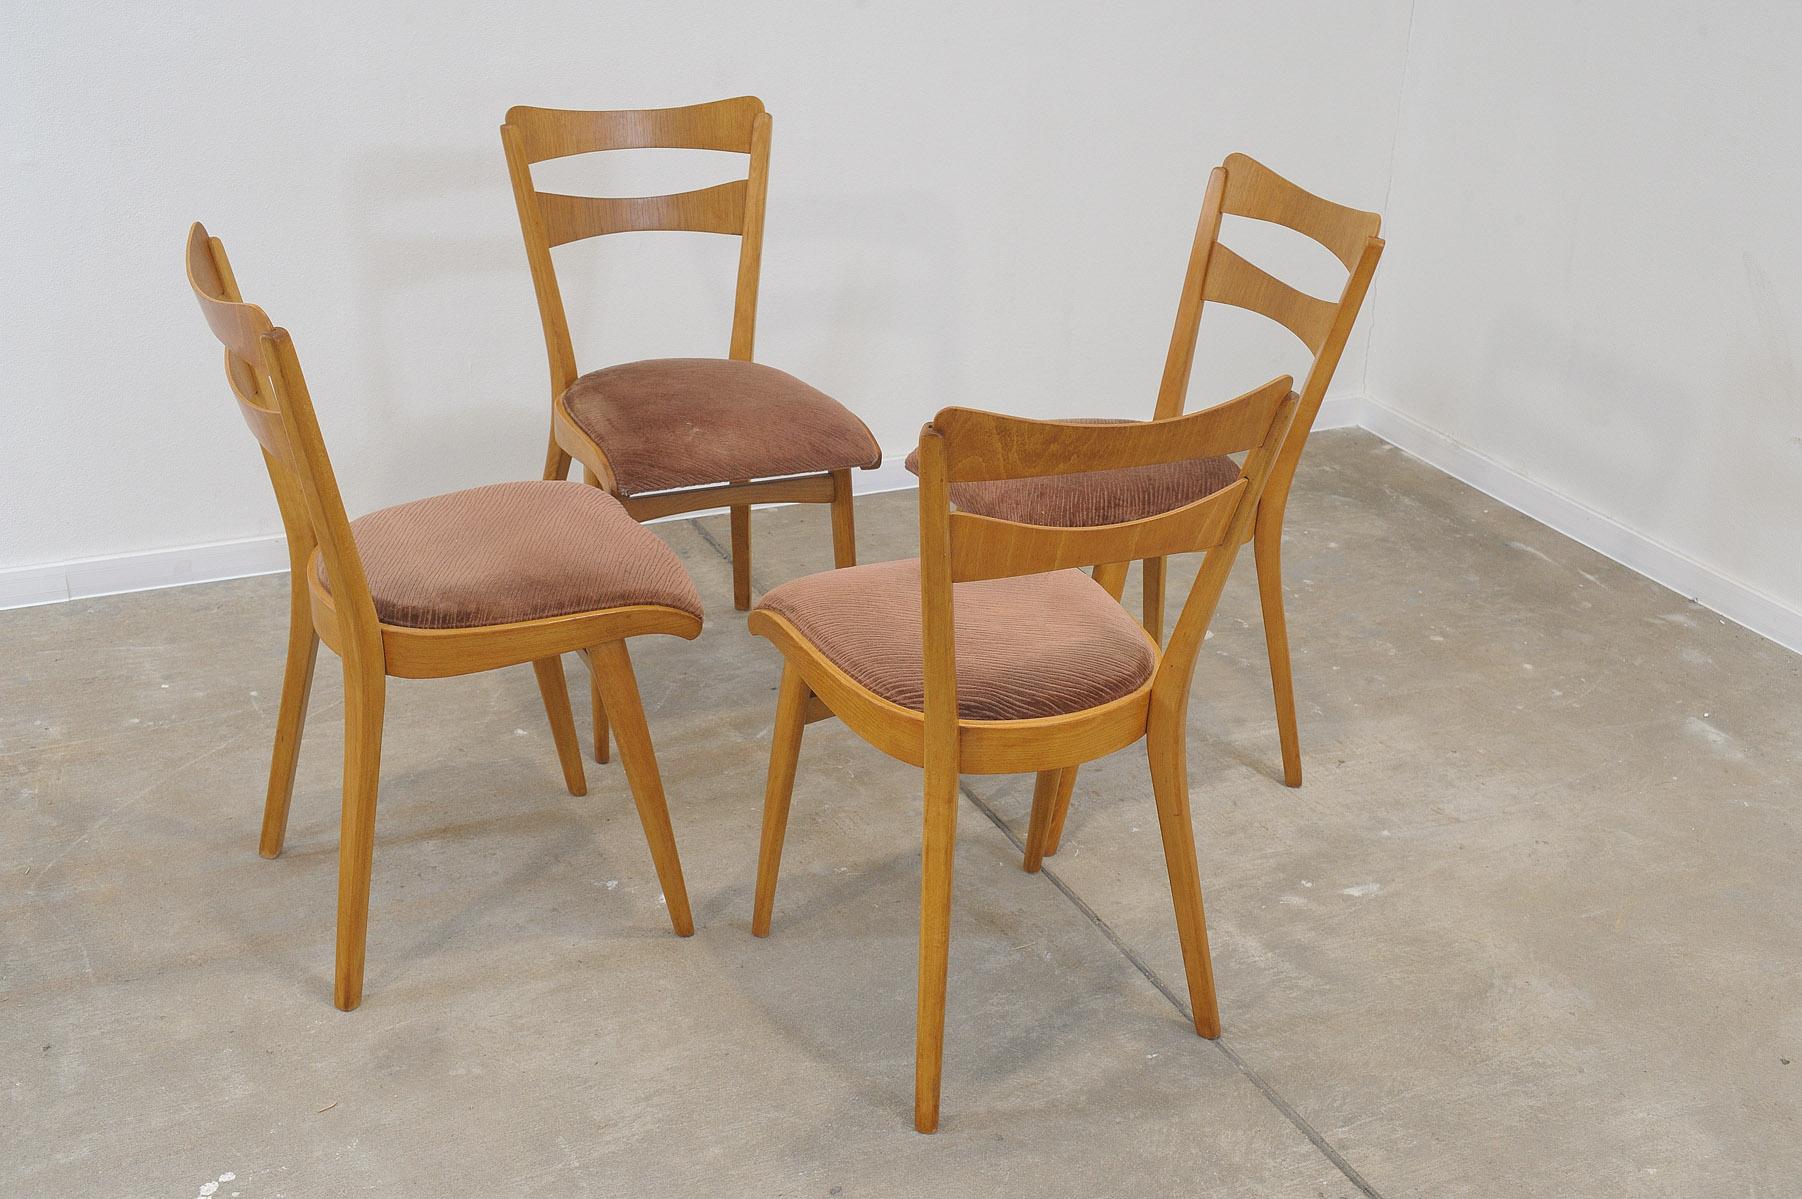 Ensemble de quatre chaises de salle à manger rembourrées du milieu du siècle, fabriquées dans l'ancienne Tchécoslovaquie par la société Tatra nábytok dans les années 1960. Les chaises sont fabriquées en bois de hêtre. Une mise en forme très